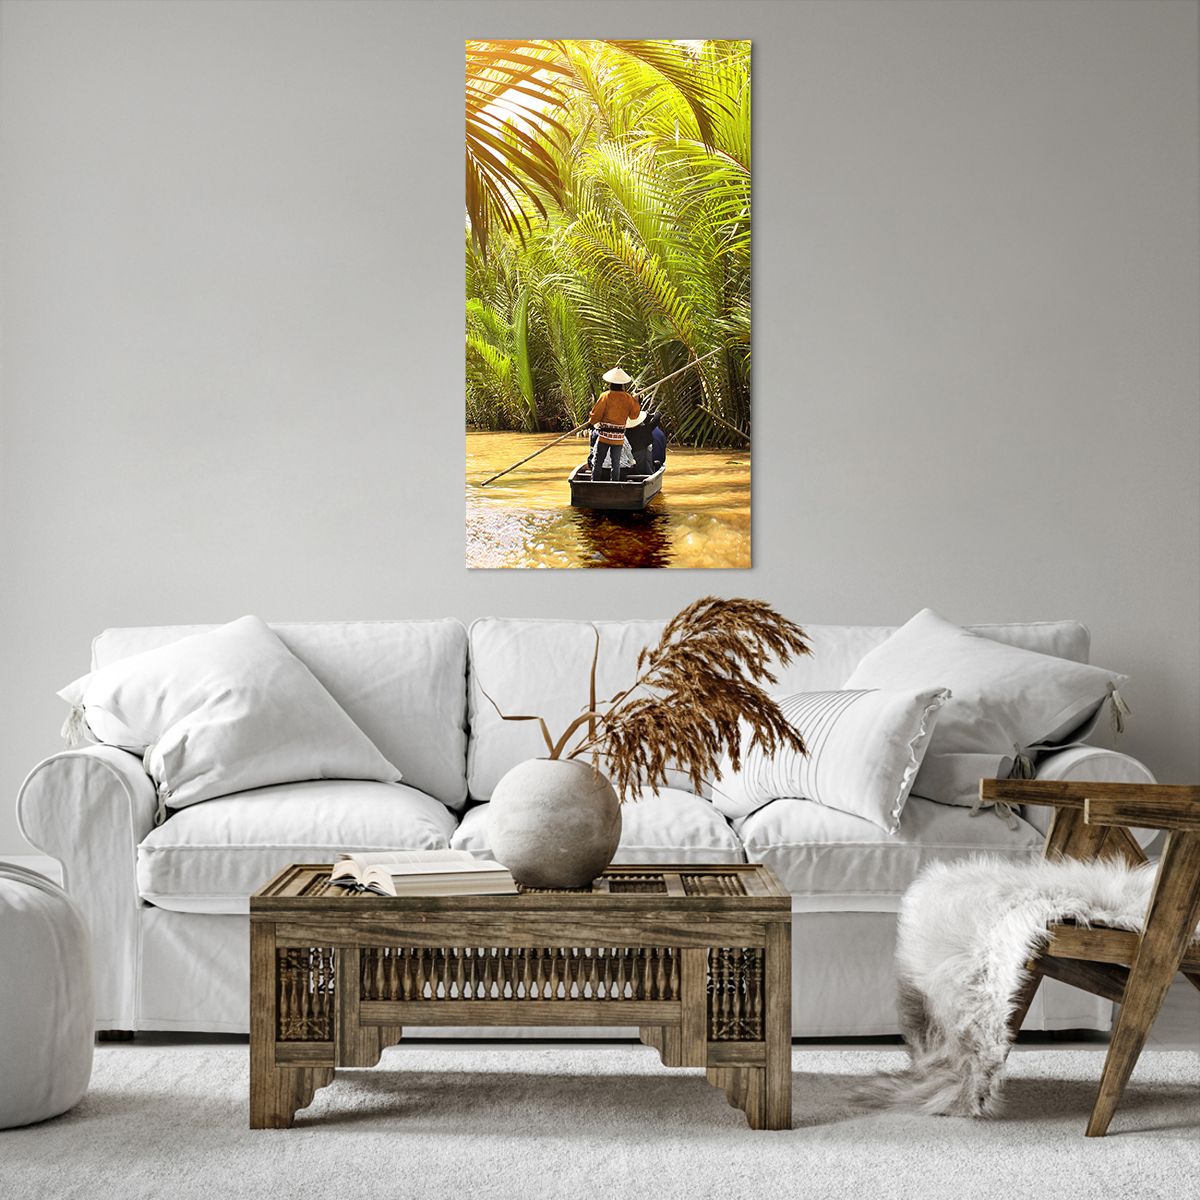 Bild auf Leinwand Mekong Fluss, Bild auf Leinwand Vietnam, Bild auf Leinwand Landschaft, Bild auf Leinwand Urwald, Bild auf Leinwand Natur